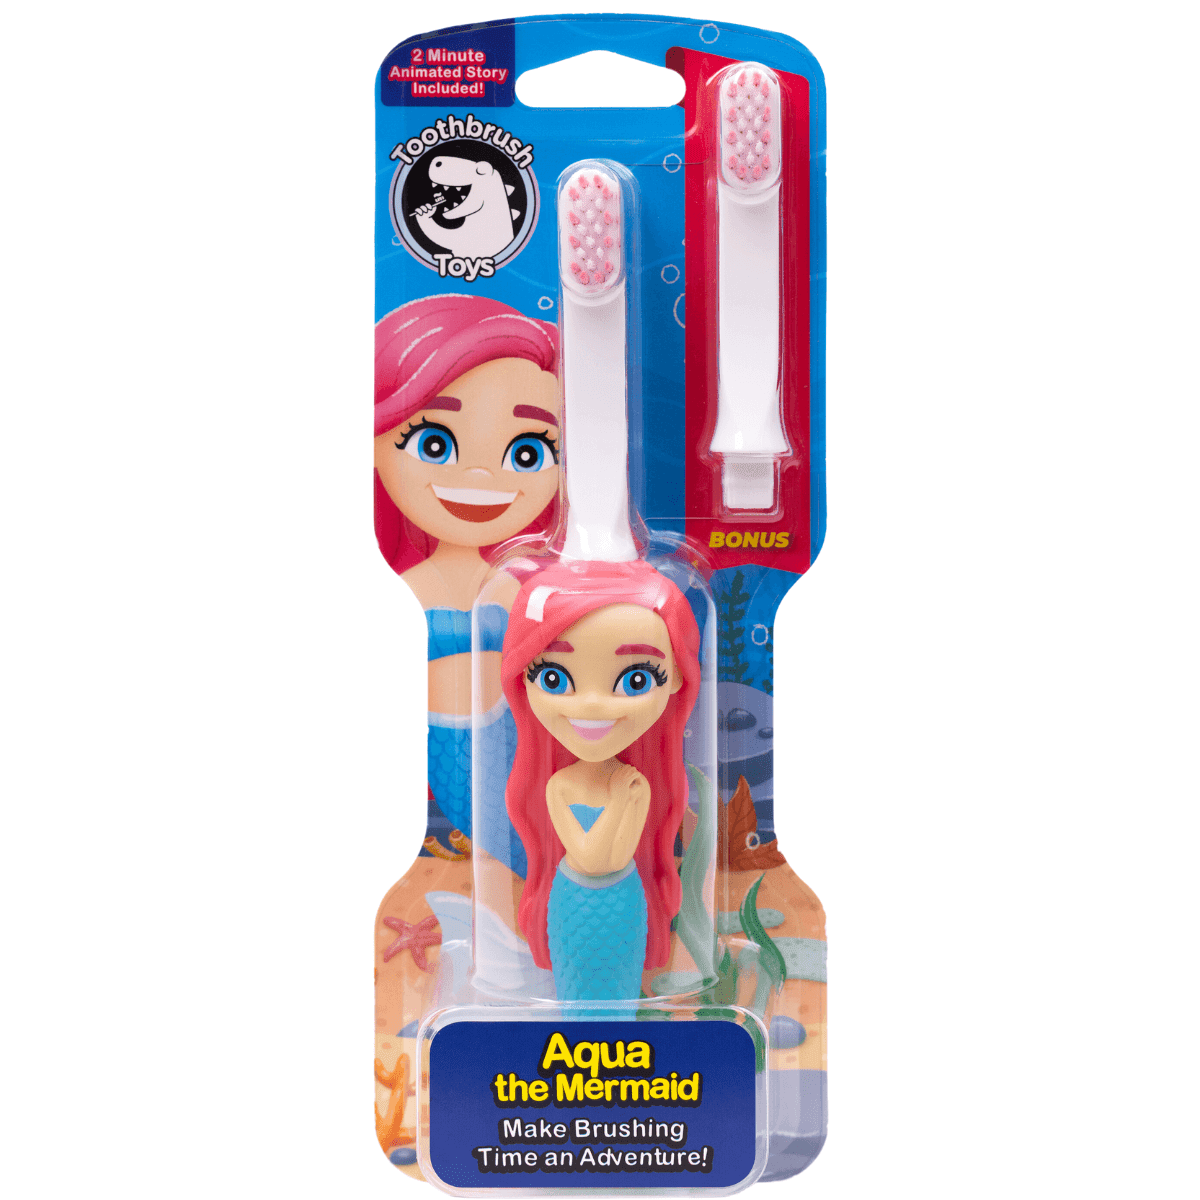 Aqua the Mermaid toothbrush in its packaging